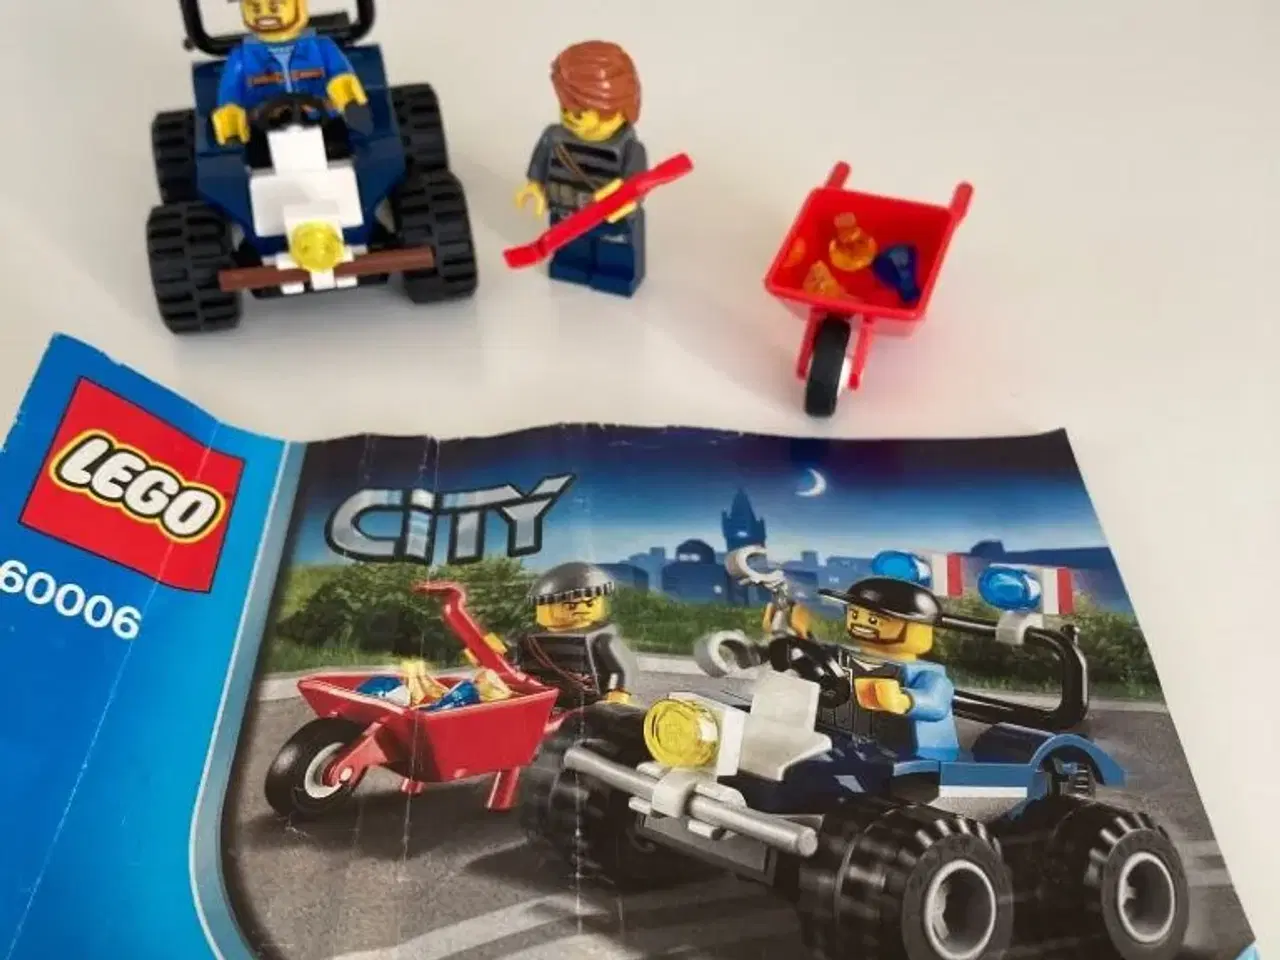 Billede 1 - Lego city bil og 2 mænd